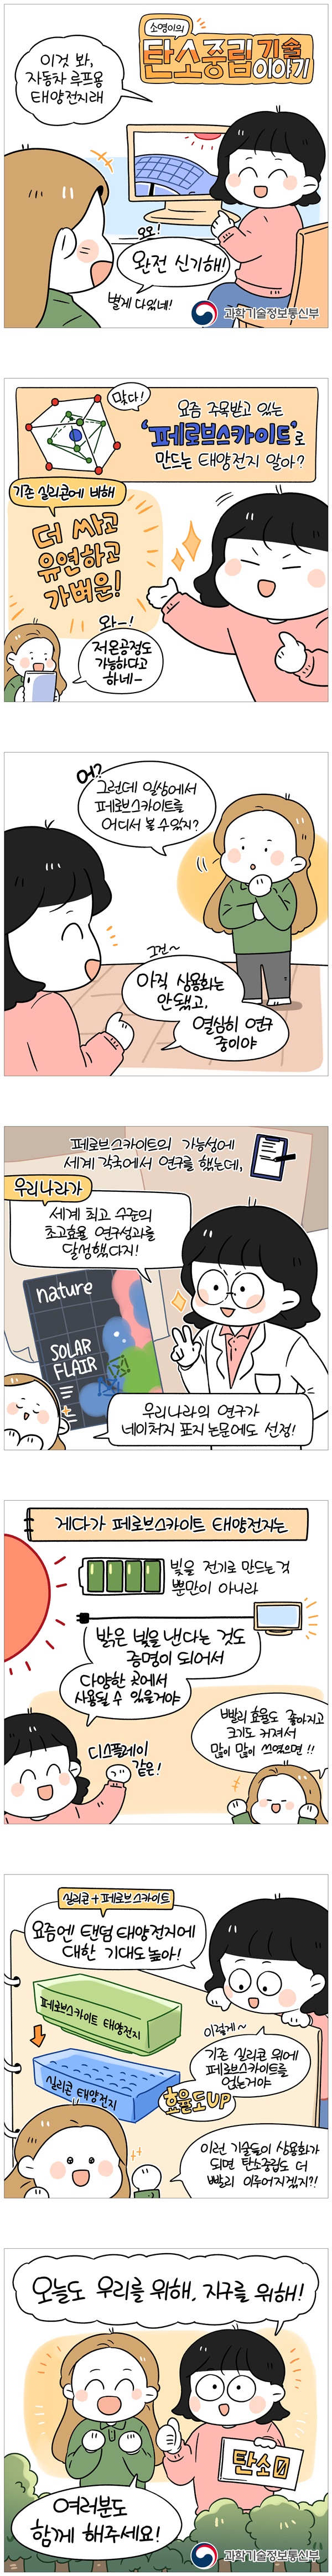 [웹툰] 소영이 탄소중립이야기 - 페로브스카이트 태양전지